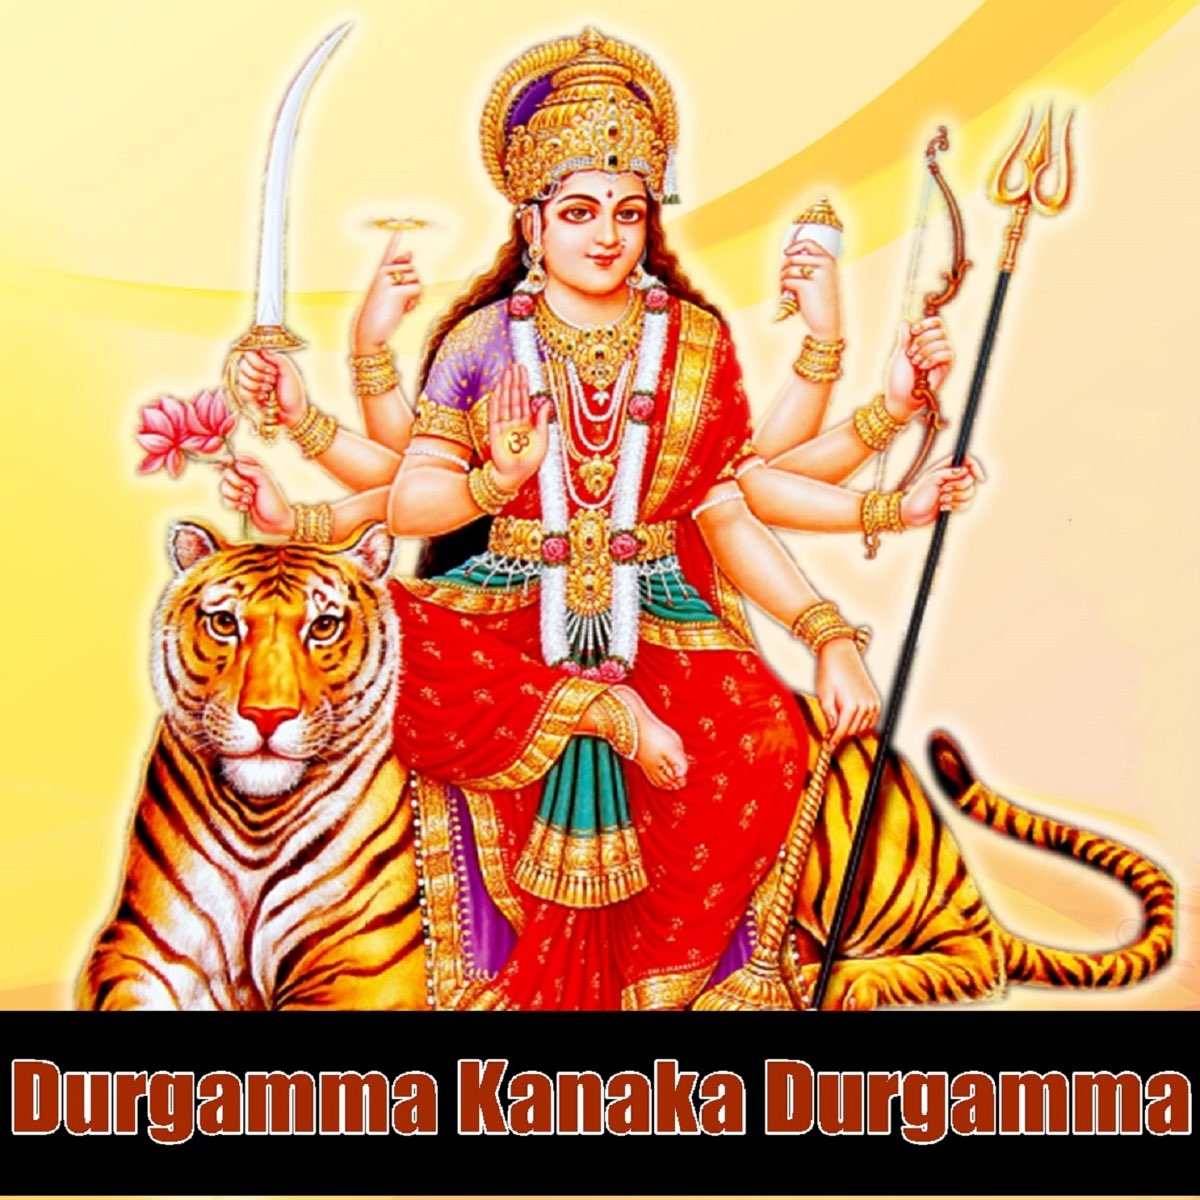 Durgamma Kanaka Durgamma by P. Susheela on Apple Music